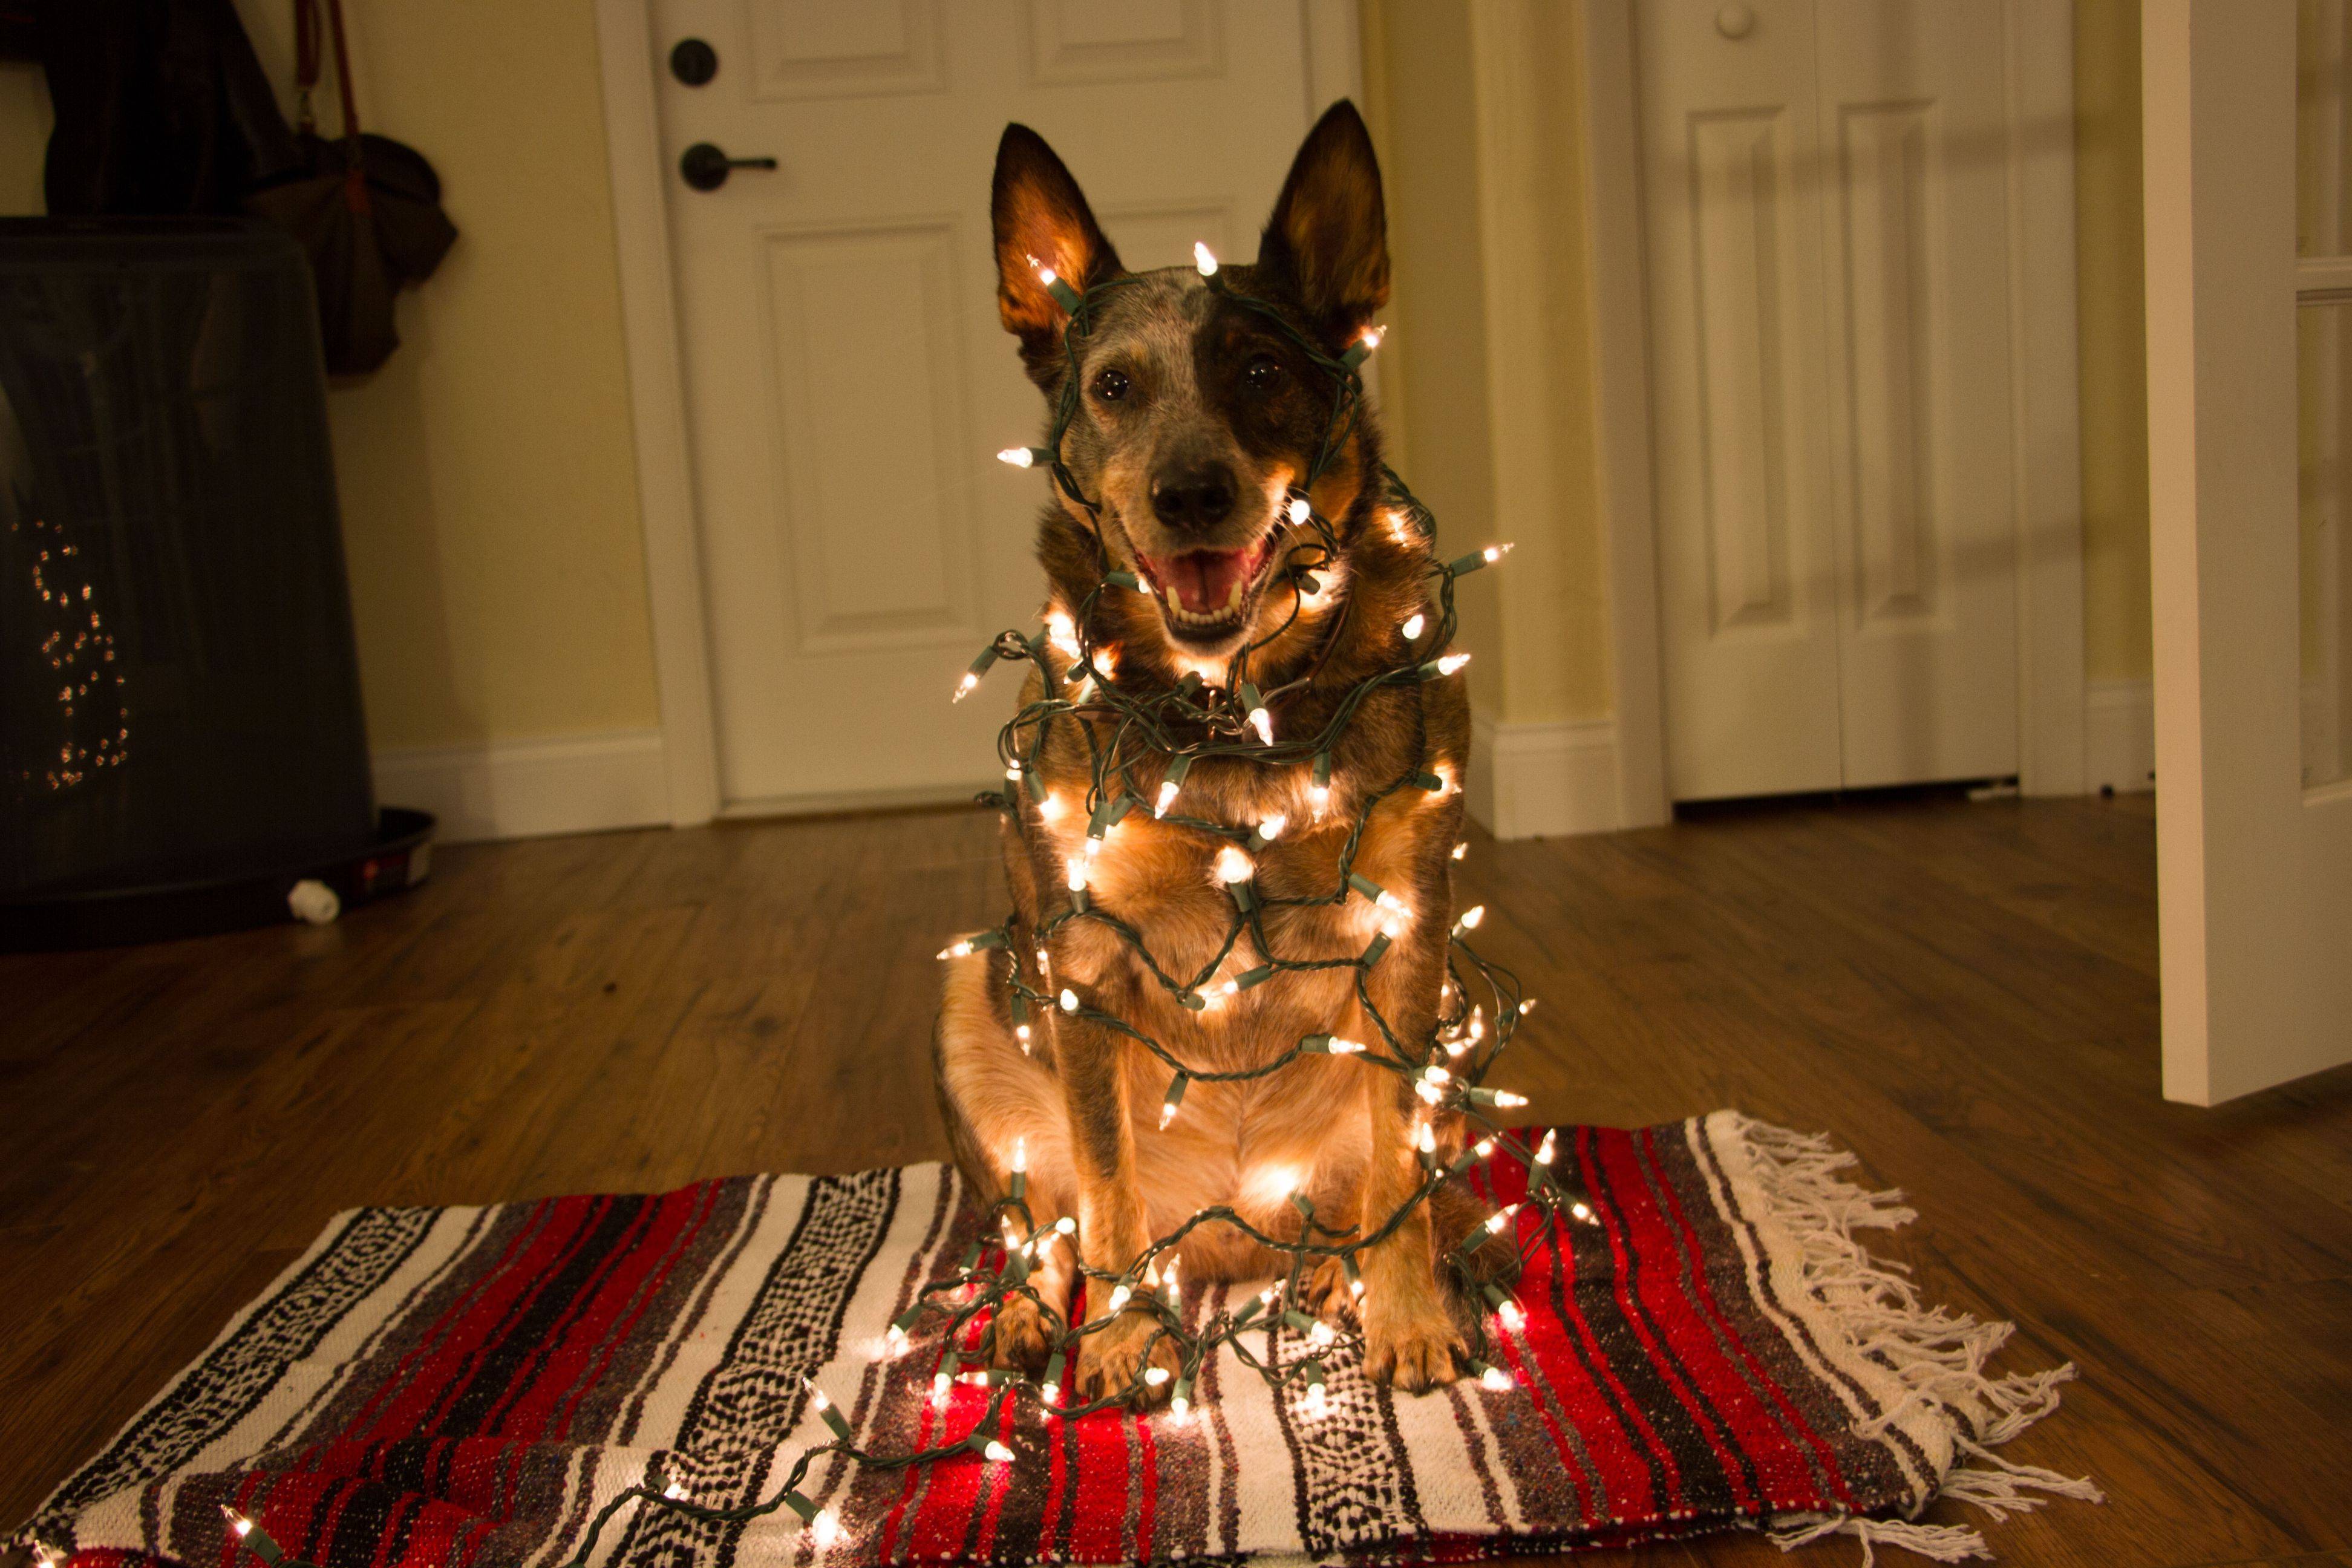 Новогодние игры для дружеского или домашнего праздника "встречаем год собаки дома".